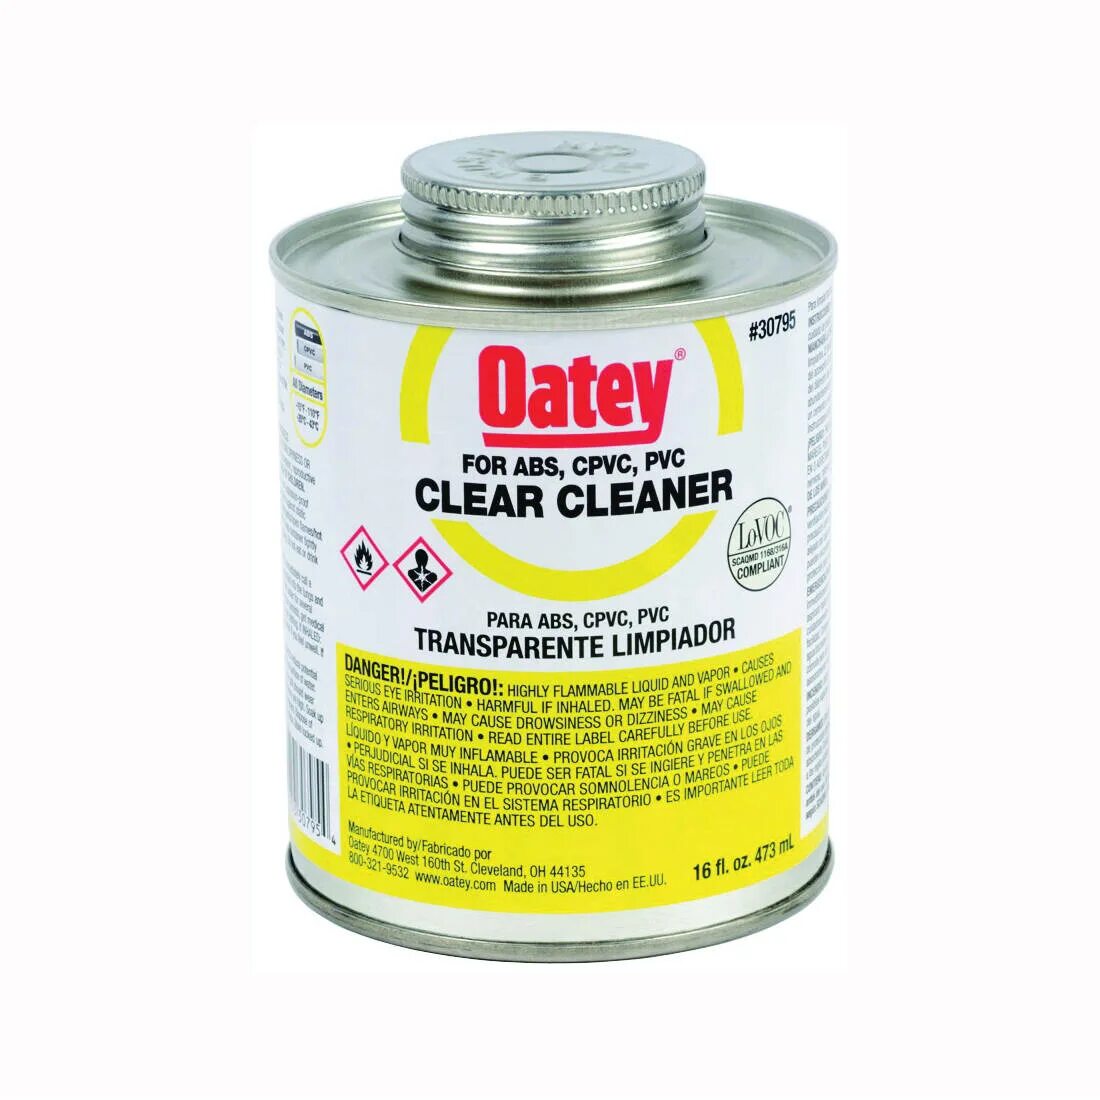 Чистка clear. PVC Cleaner 5 очиститель. Очиститель Wiko PVC Cleaner 5. Oatey клей all purpose Cement. Очиститель 16 в 1.